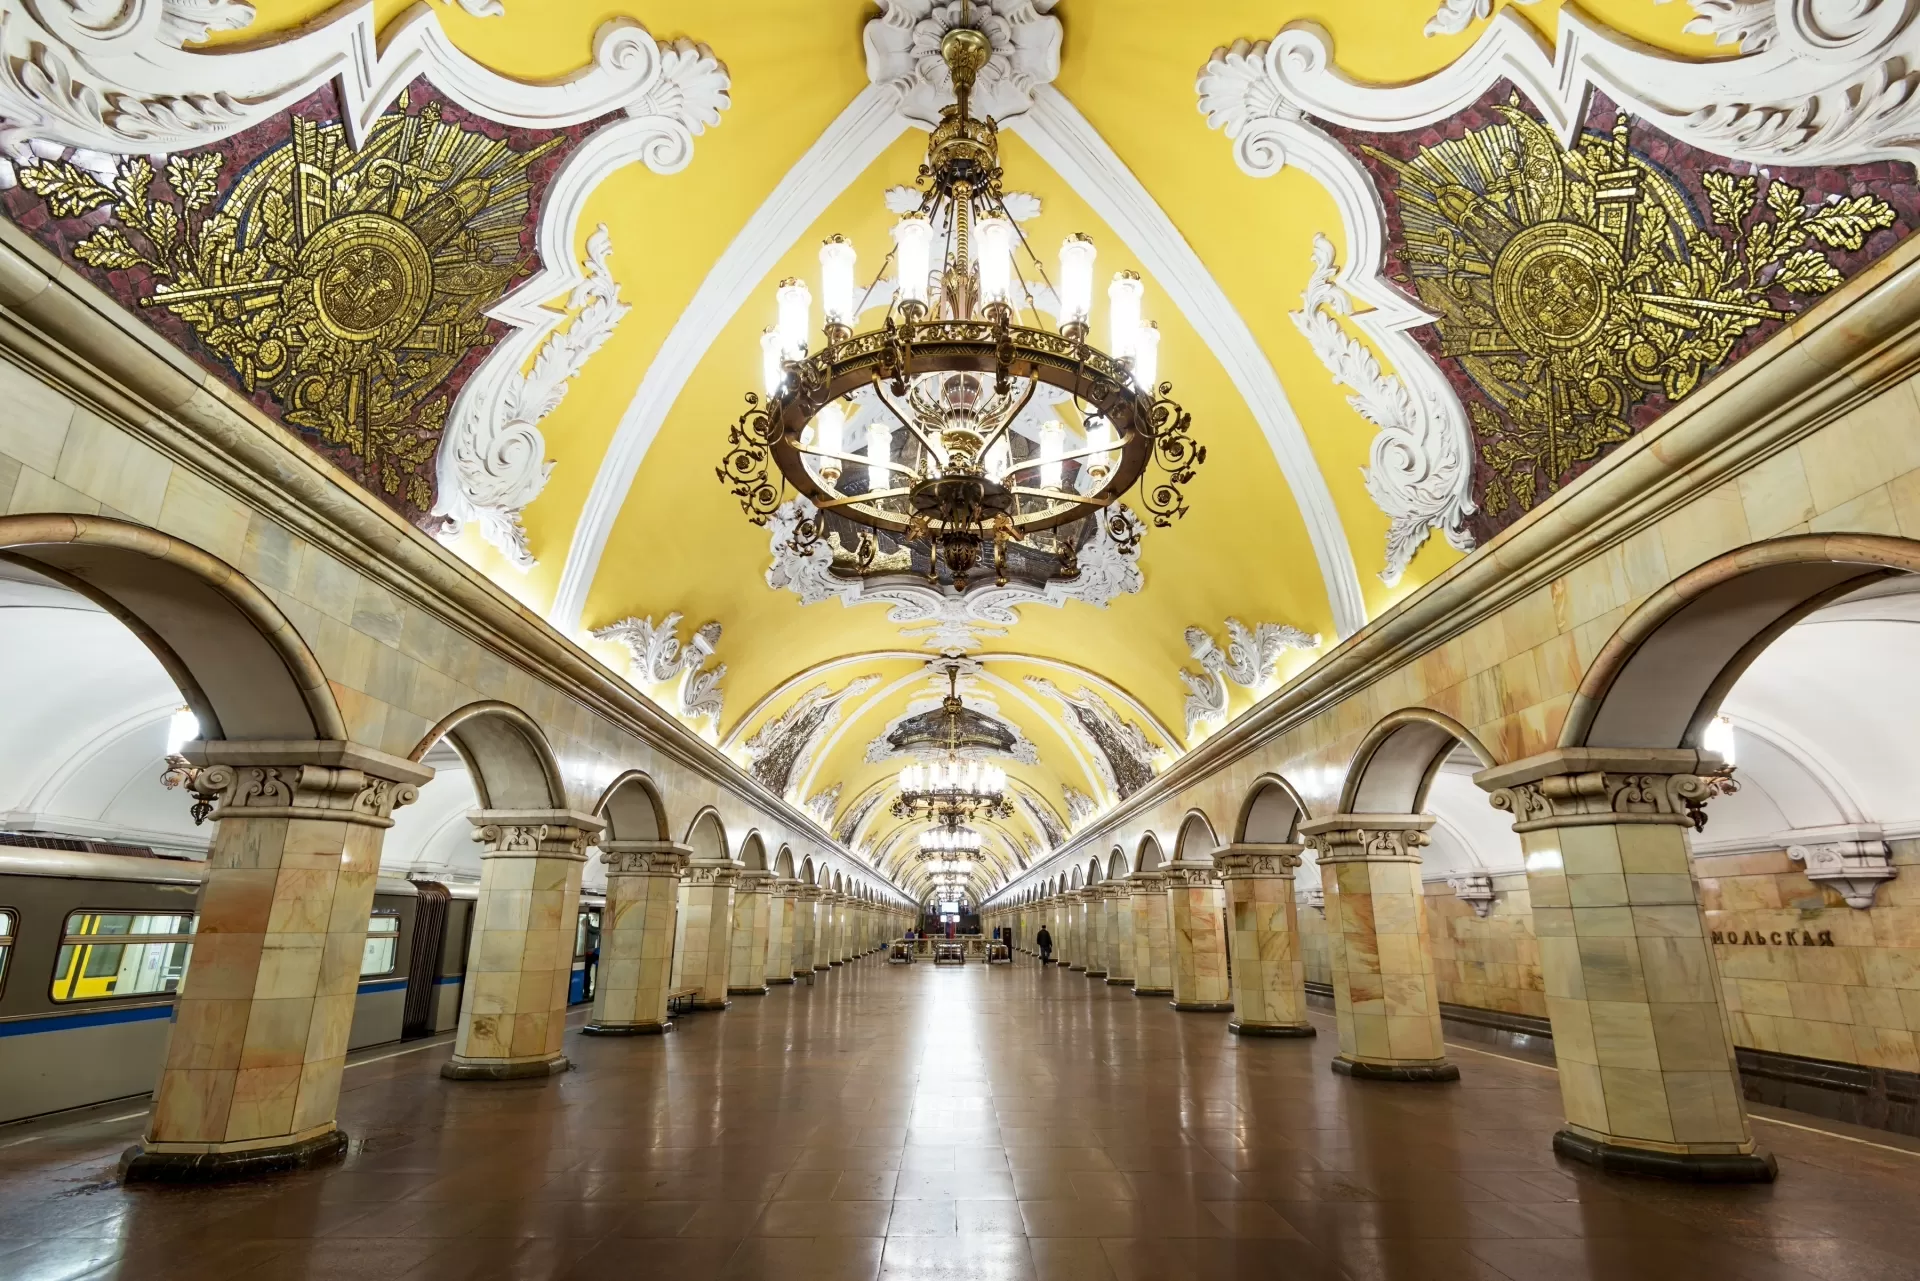 Estação de metrô Komsomolskaya, em Moscou, na Rússia - scaliger/Getty Images/iStockphoto